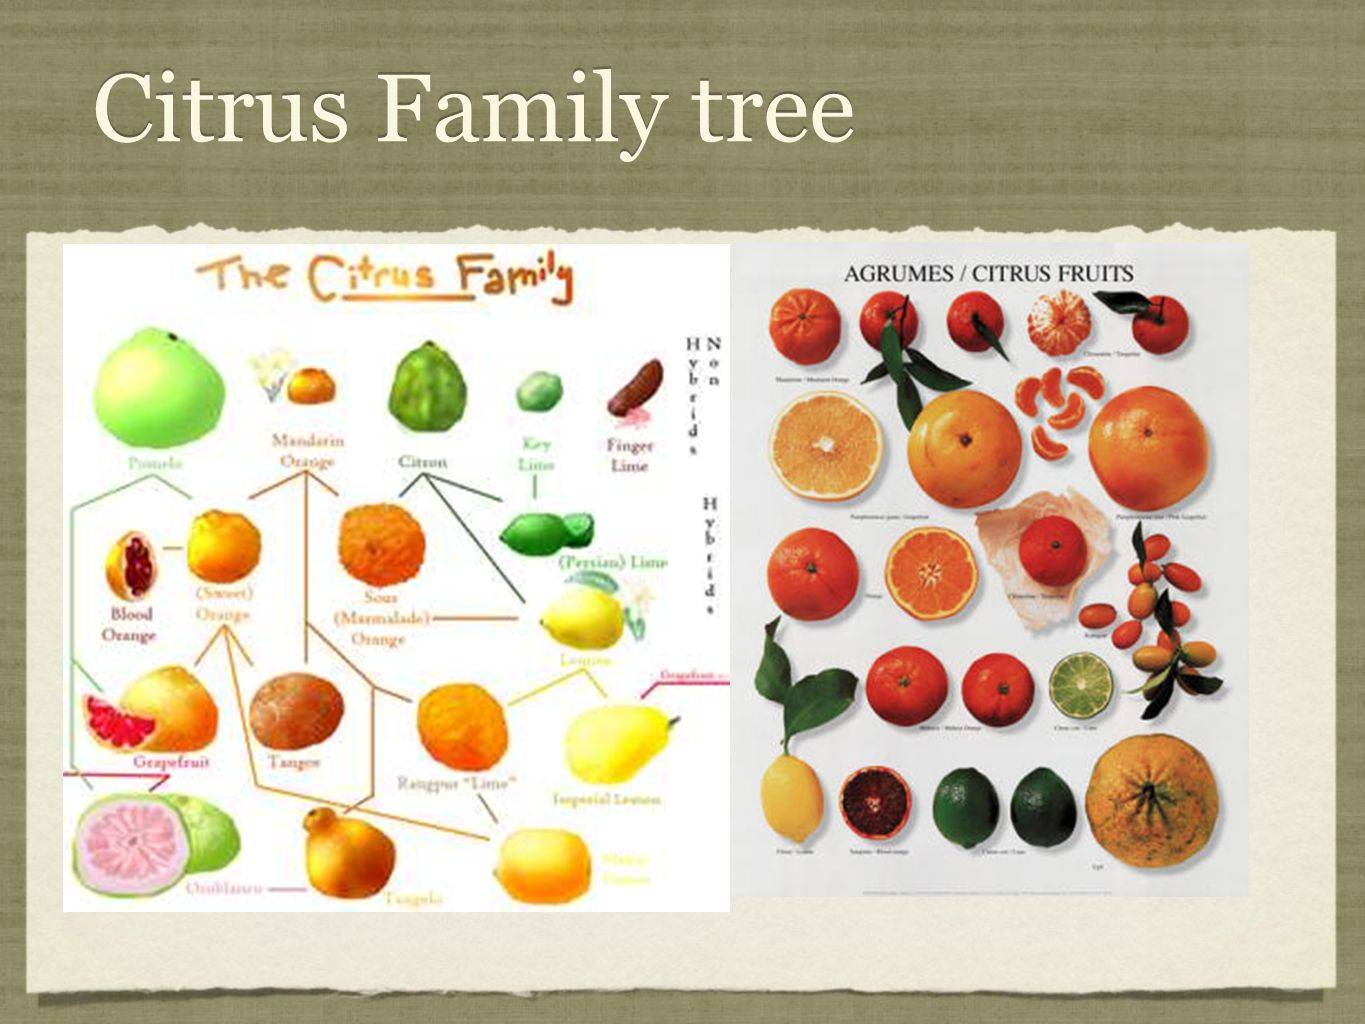 Цитрусовые фрукты: 34 распространенных вида с описаниями и фото + общая характеристика, полезные свойства и вред